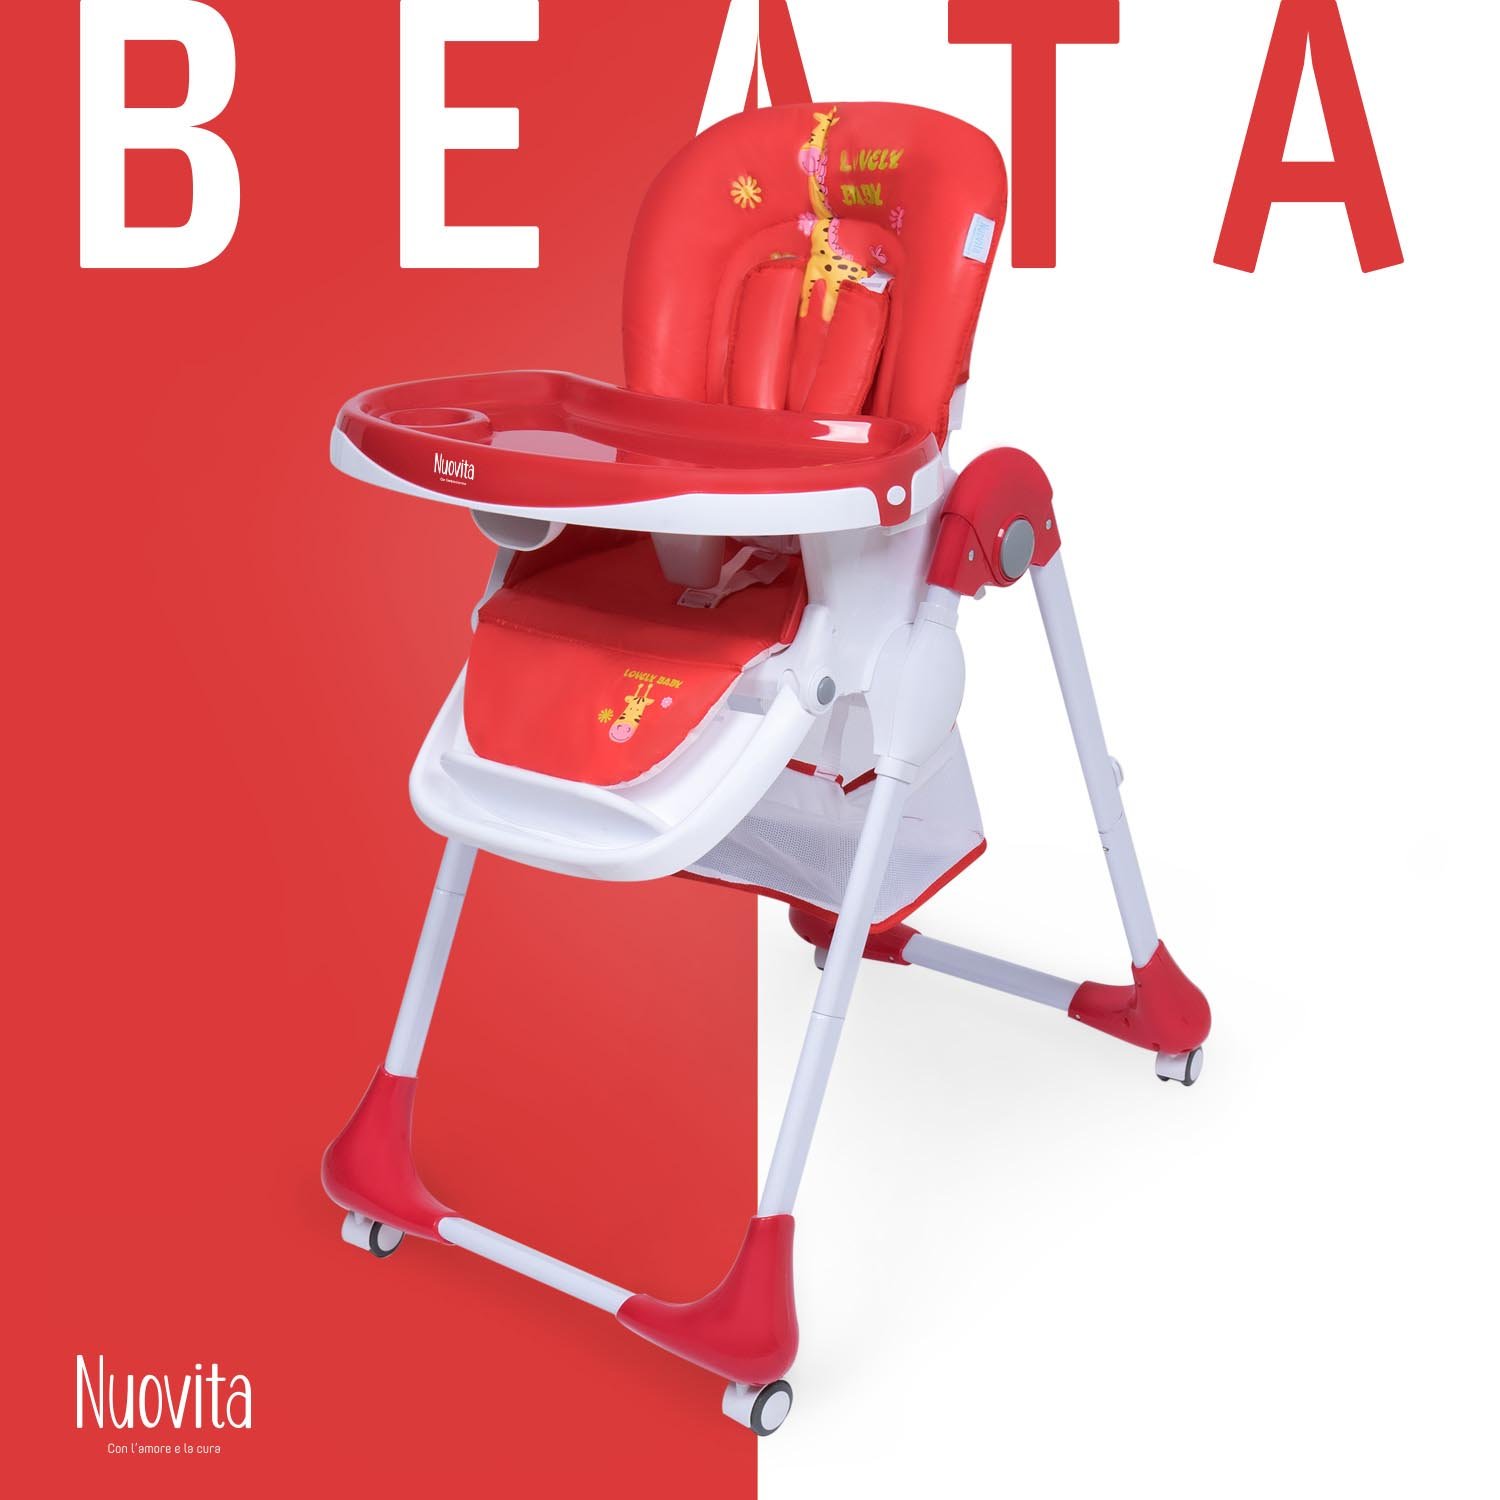 Стульчик для кормления Nuovita Beata ( Savana rosso) стульчик для кормления nuovita beata